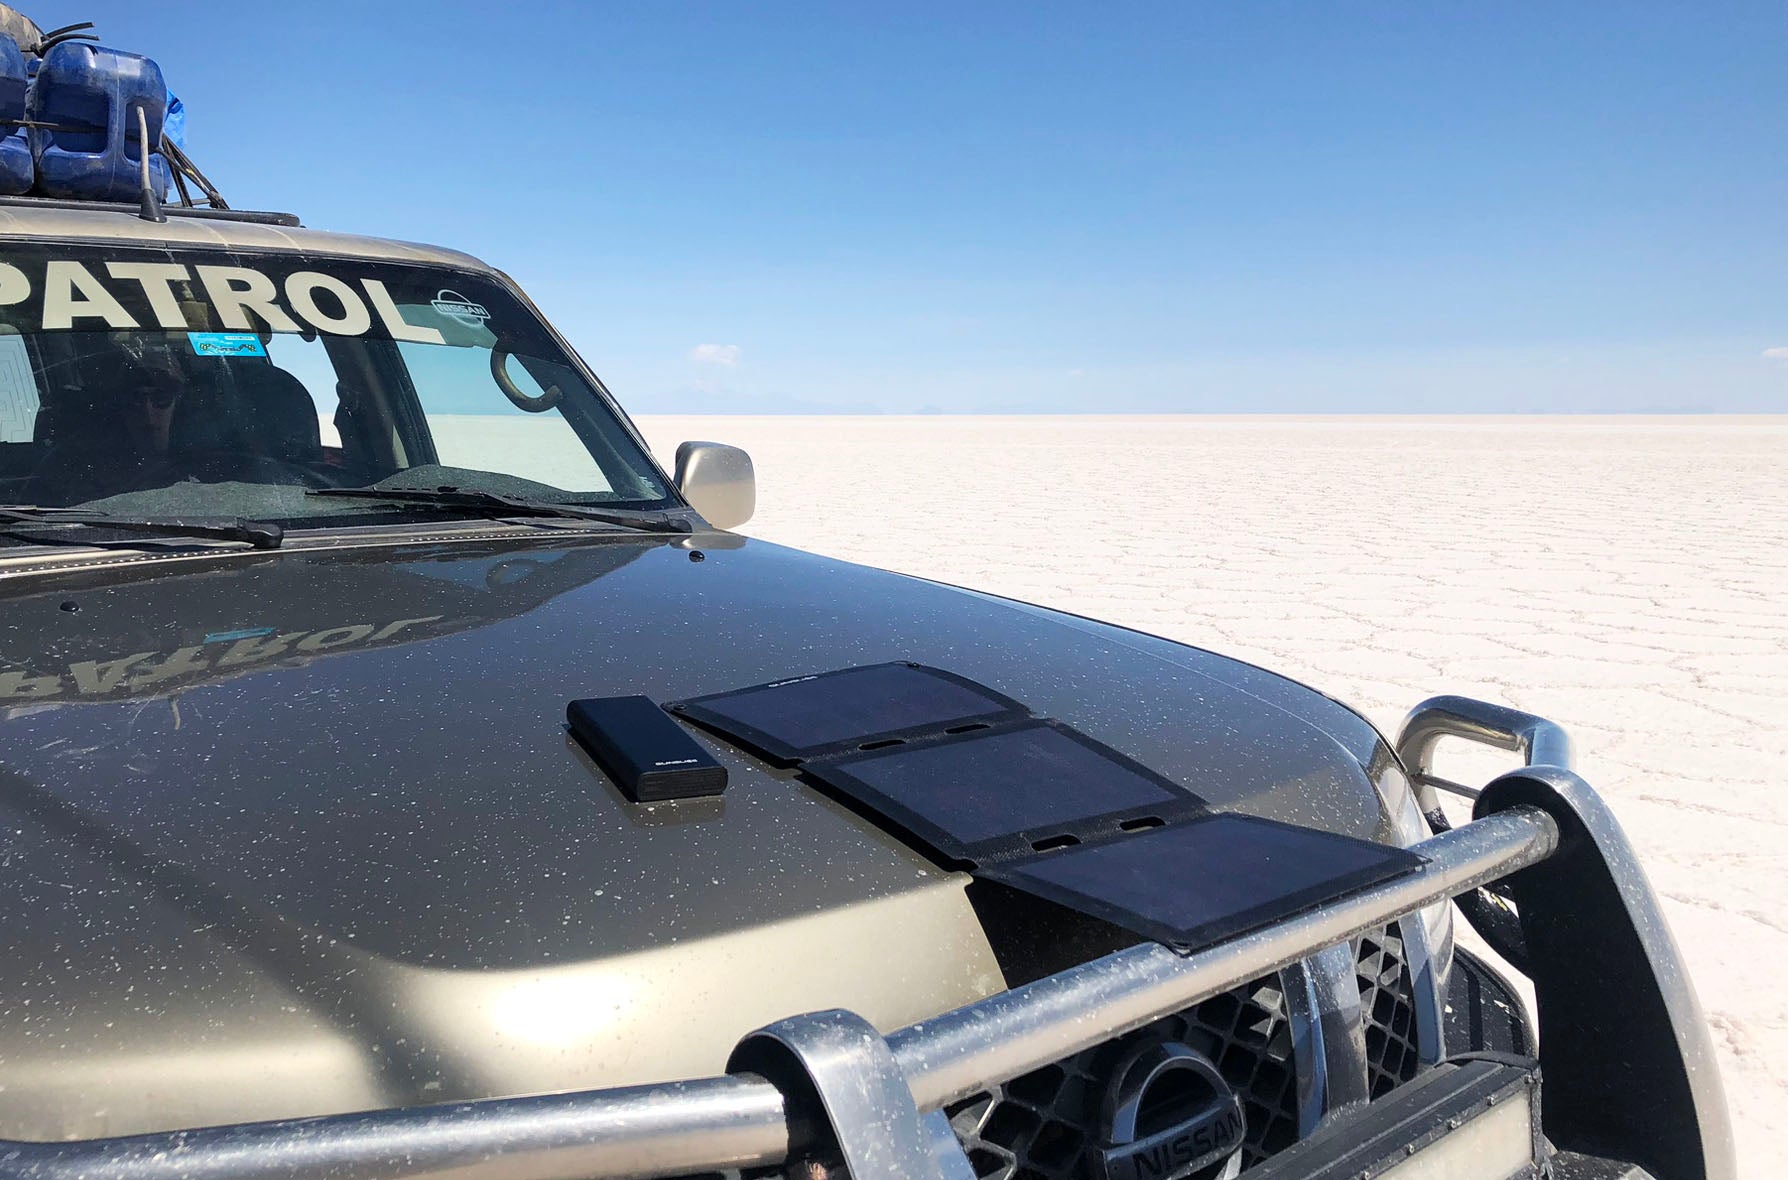 Tragbares Solarpanel (Fusion flex 18) und Powerbank (gravity 100) auf einem Auto in der Wüste 